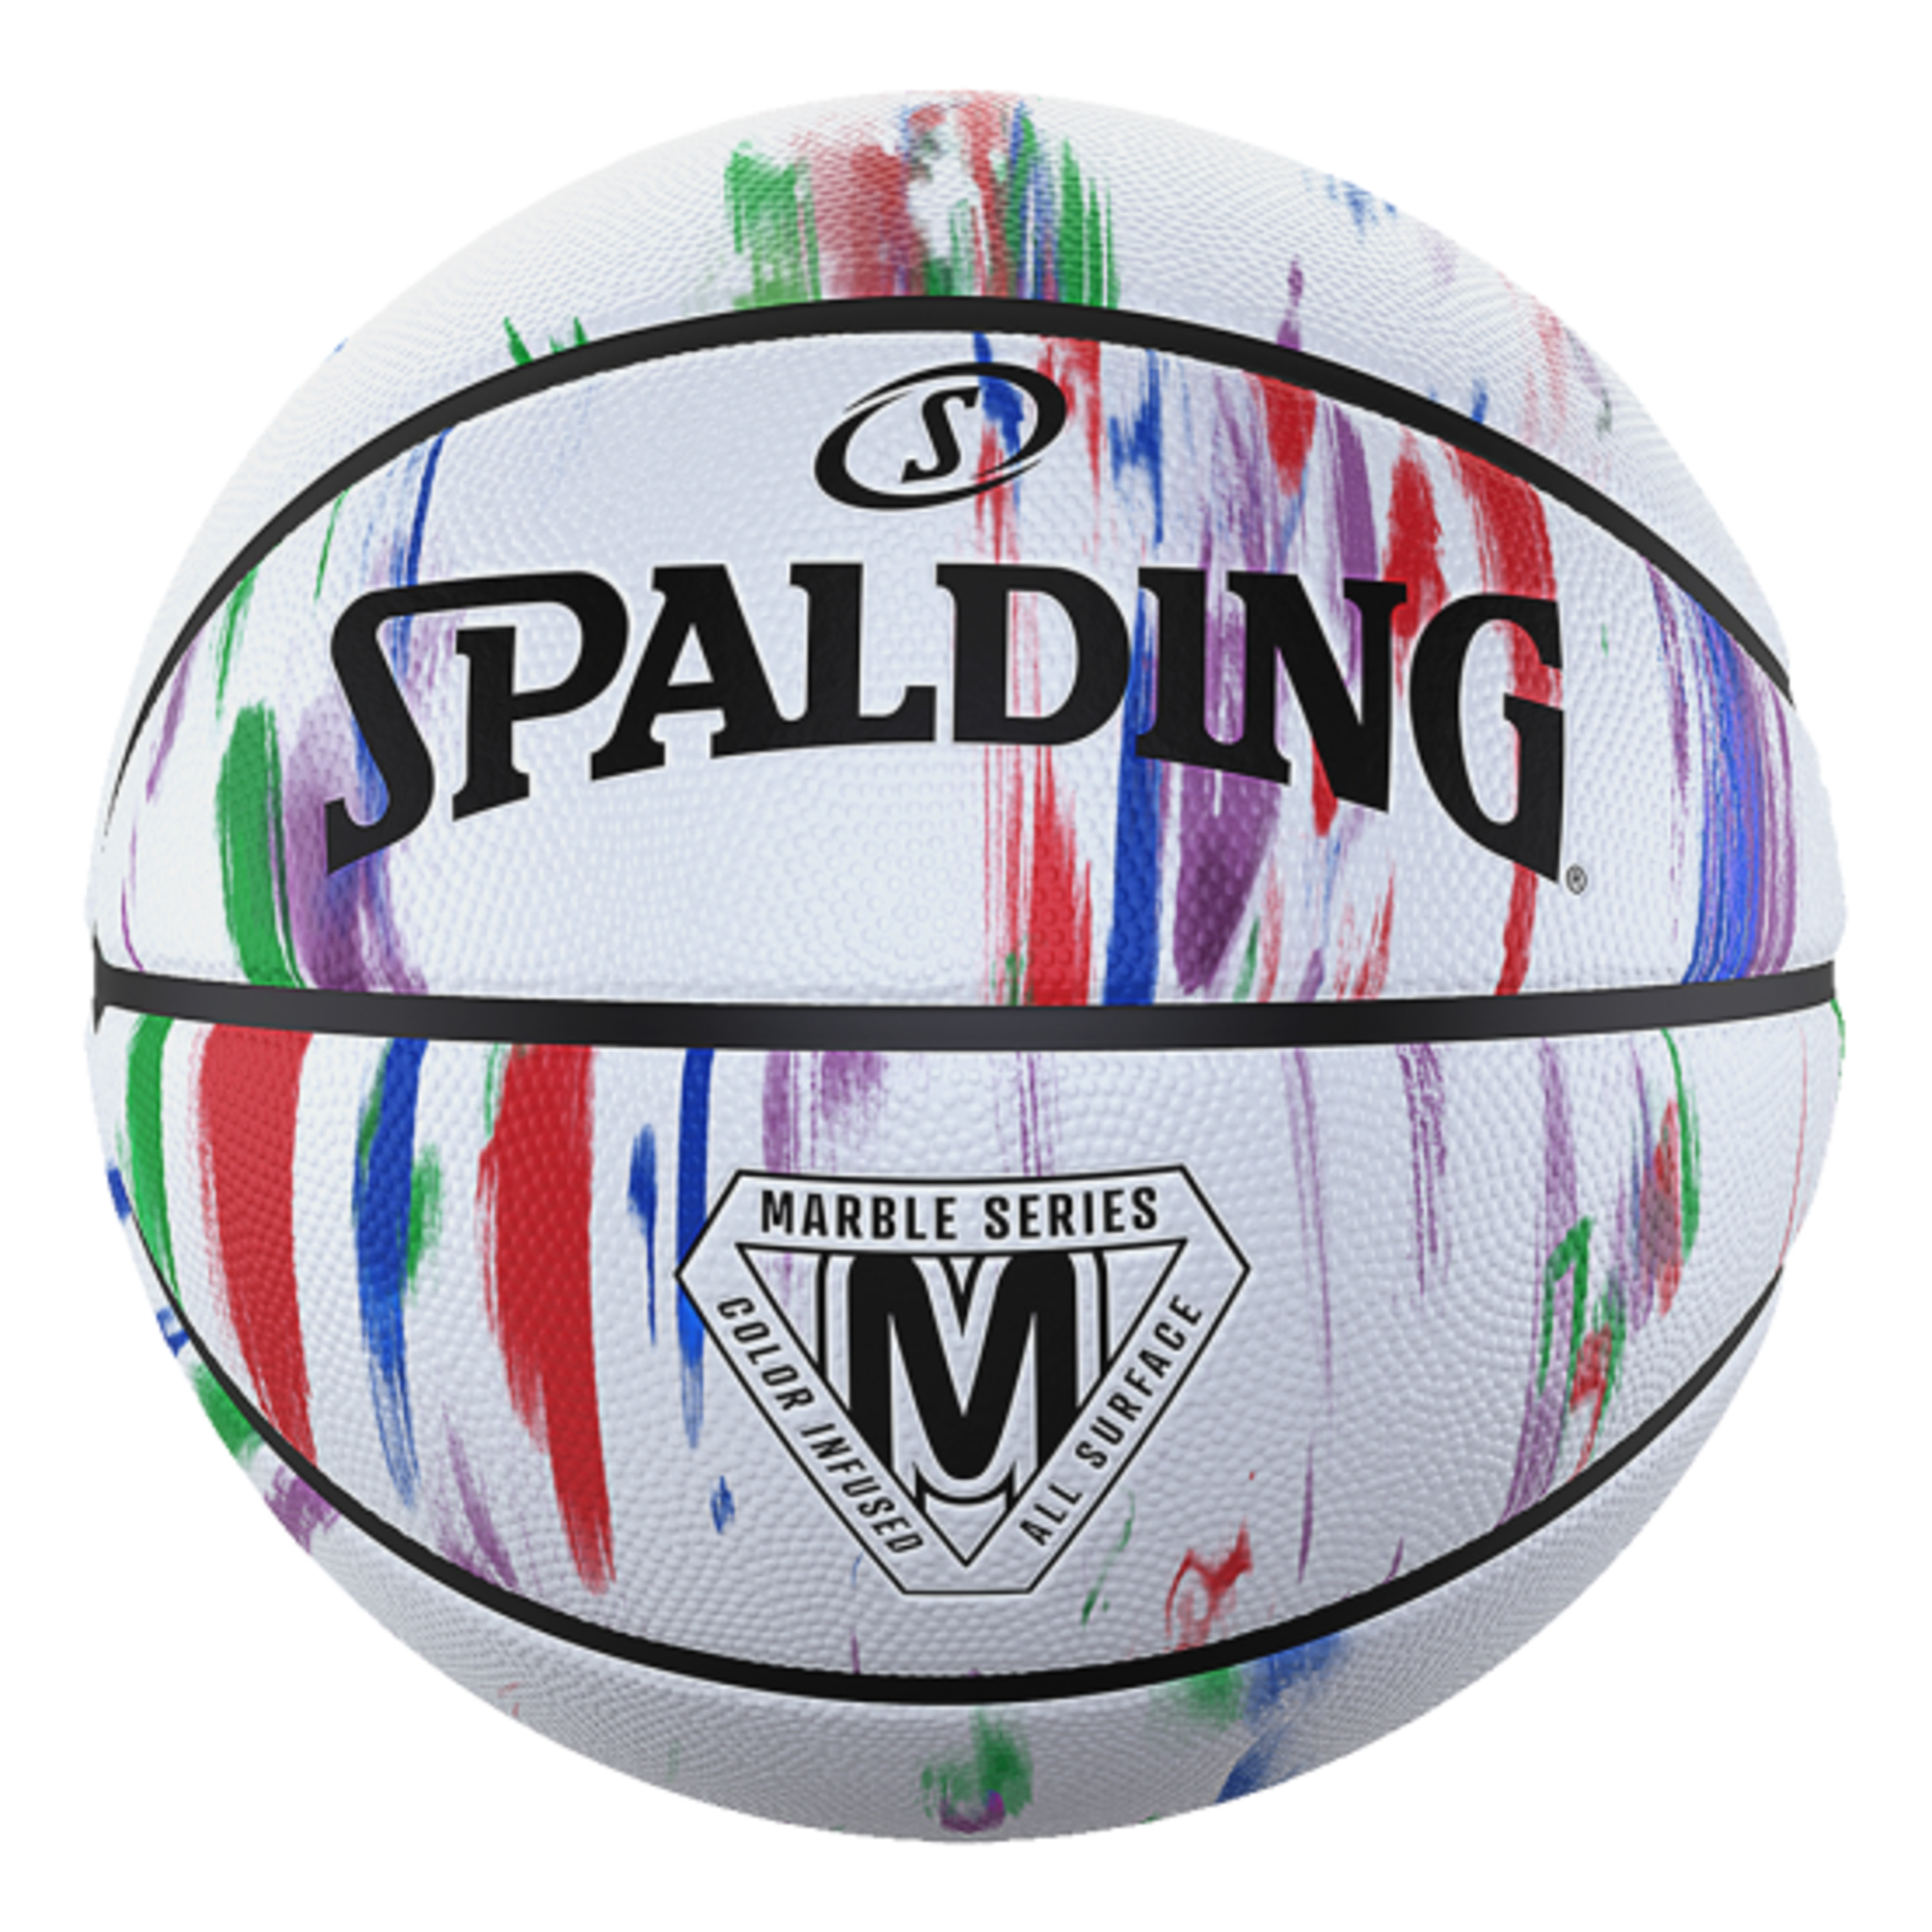 Balón De Baloncesto Spalding Marble Series Rainbow Sz7 - multicolor - 